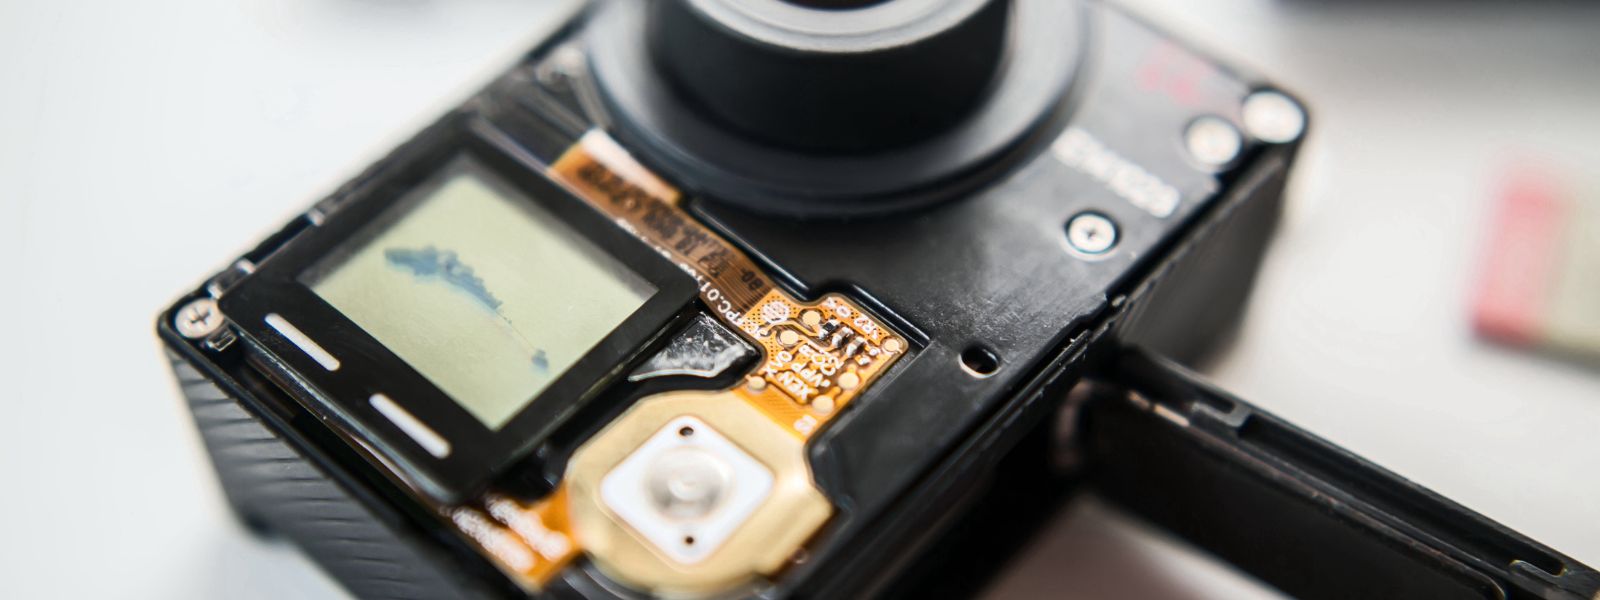 Capturez Vos Aventures Moto avec la Caméra GoPro Idéale